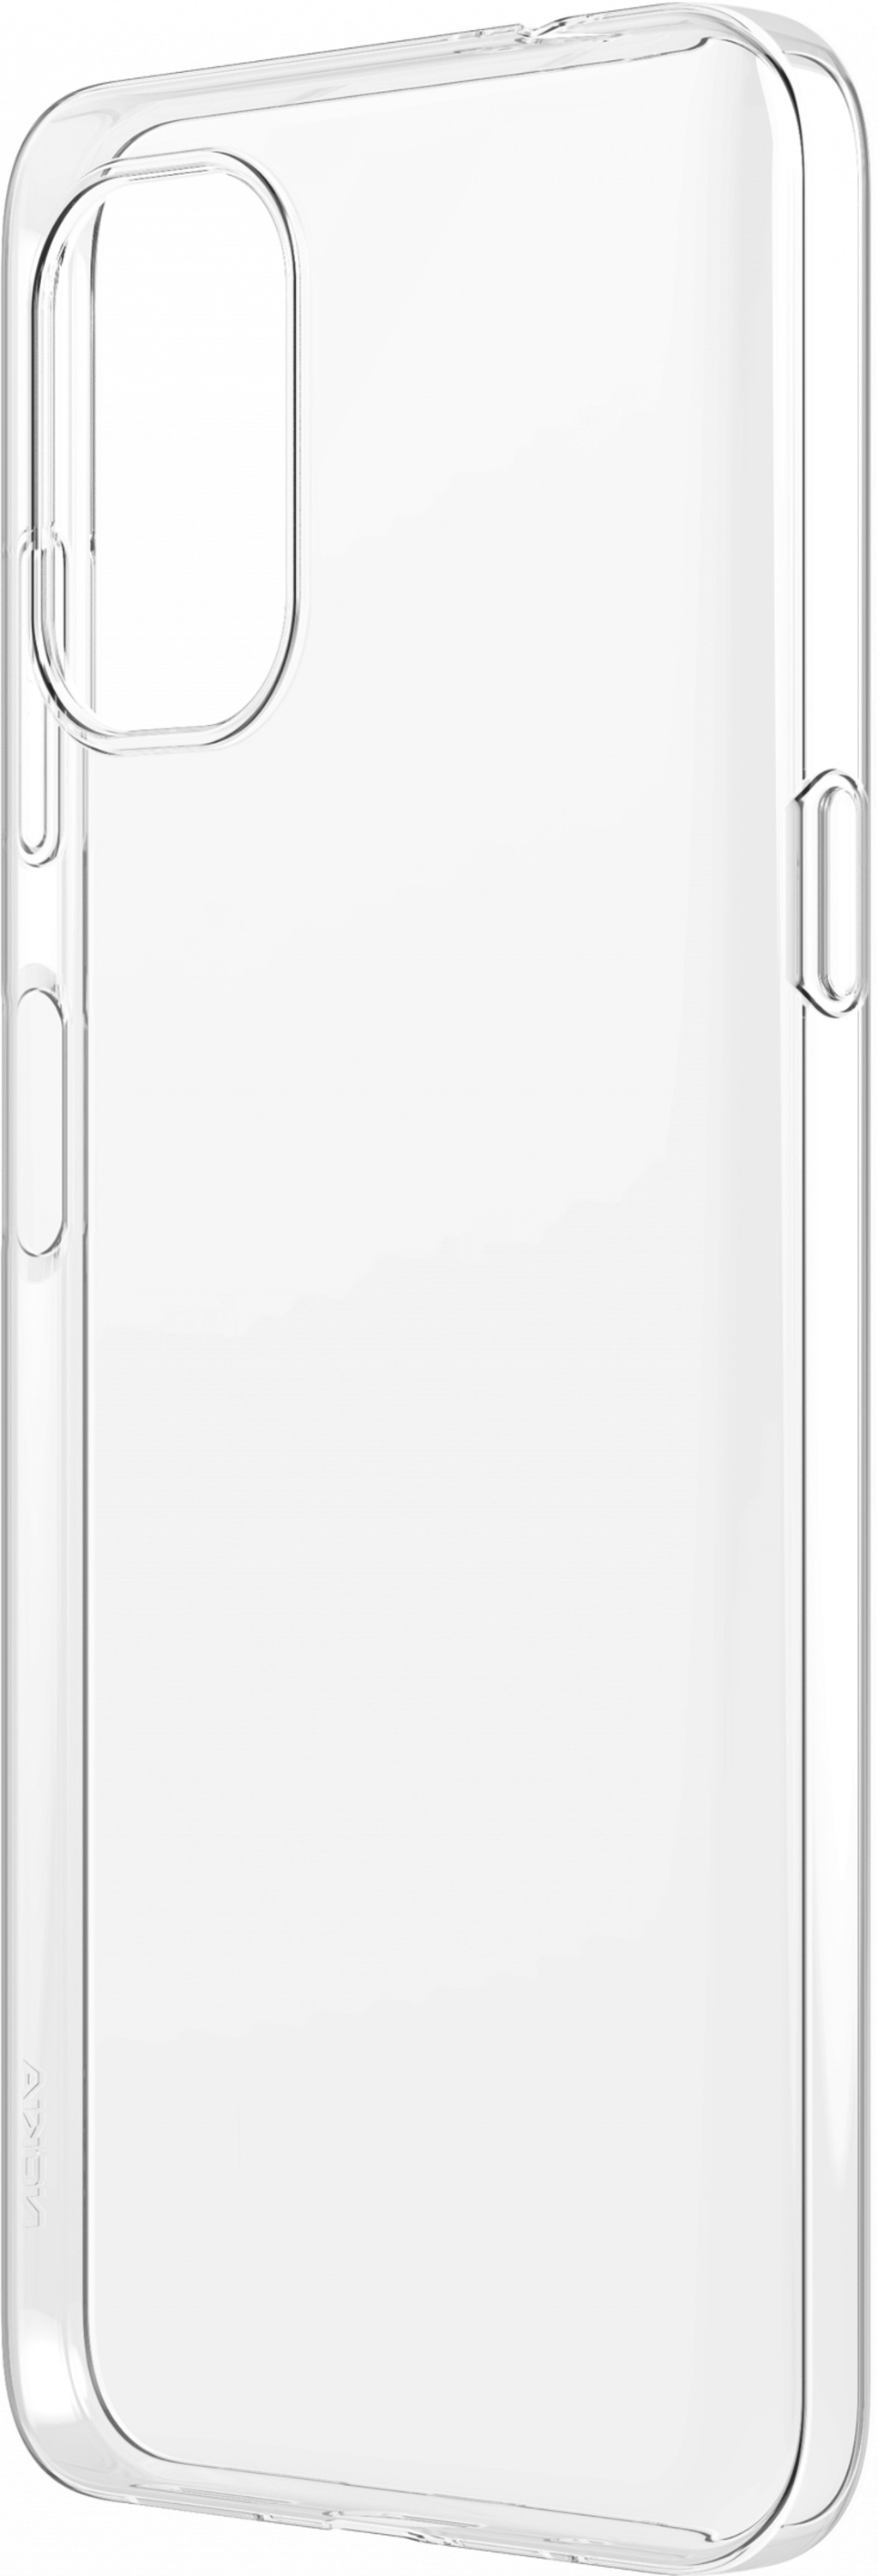 Калъф за смартфон NOKIA G11/G21 CLEAR CASEна ниска цена с бърза доставка